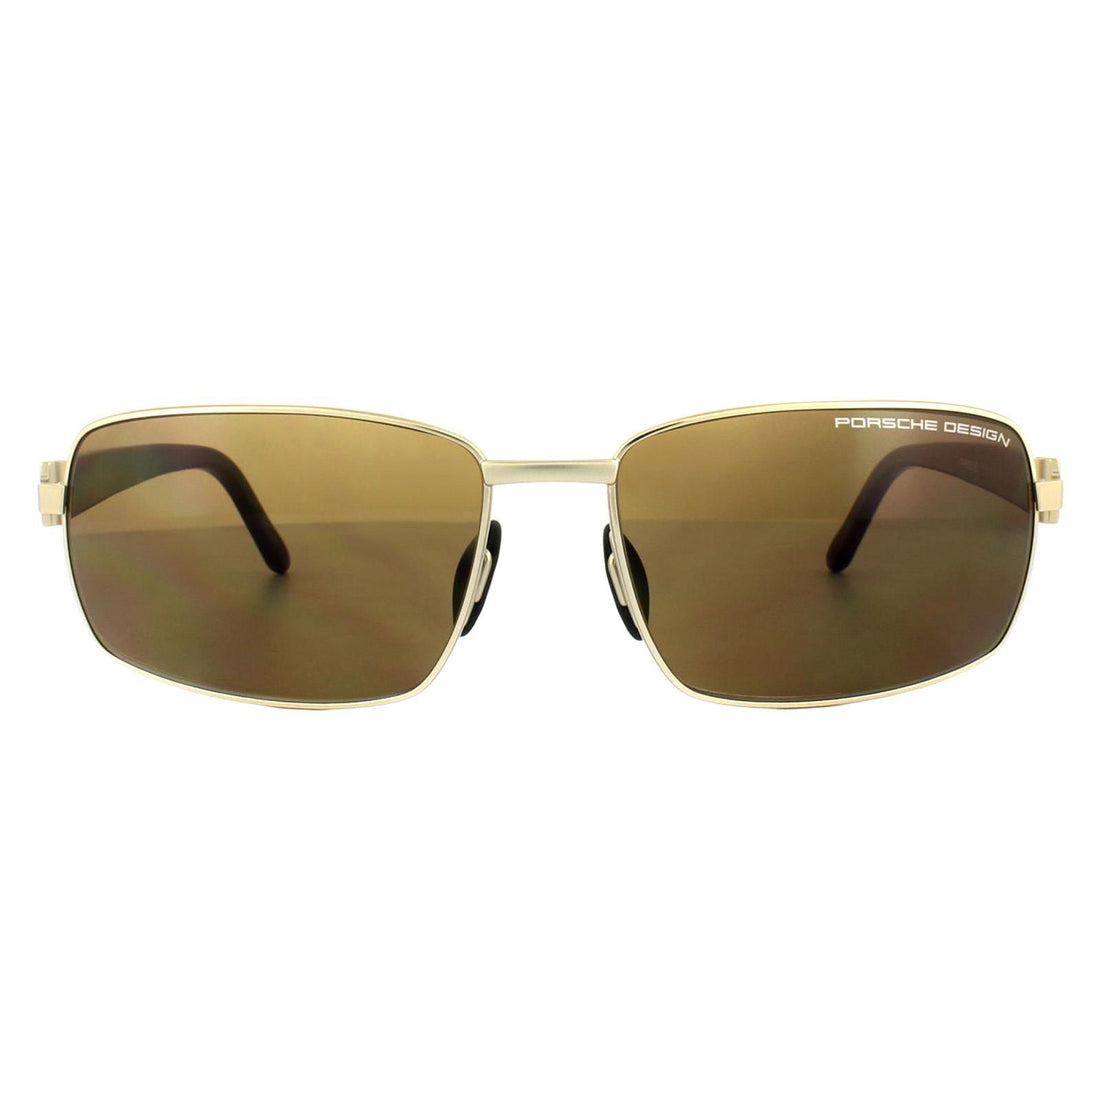 Porsche Design P8902 Sunglasses Gold Carbon / Brown